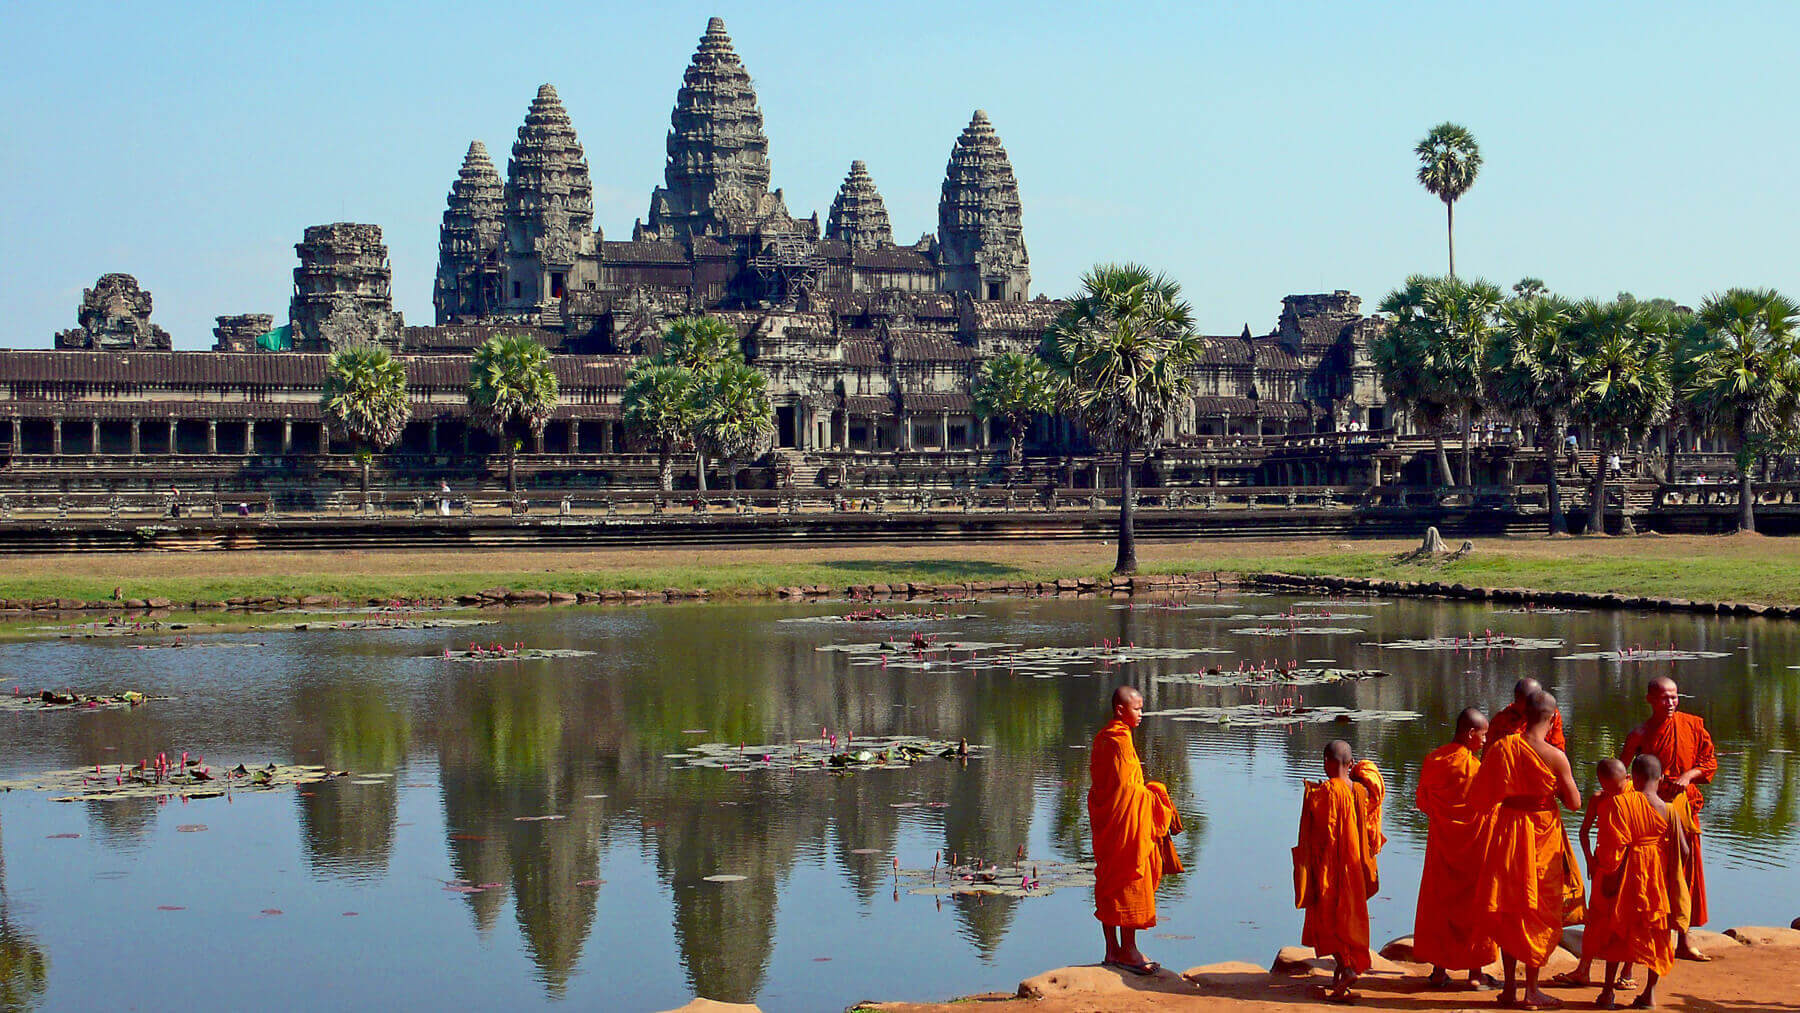 Храм Ангкор в Камбодже